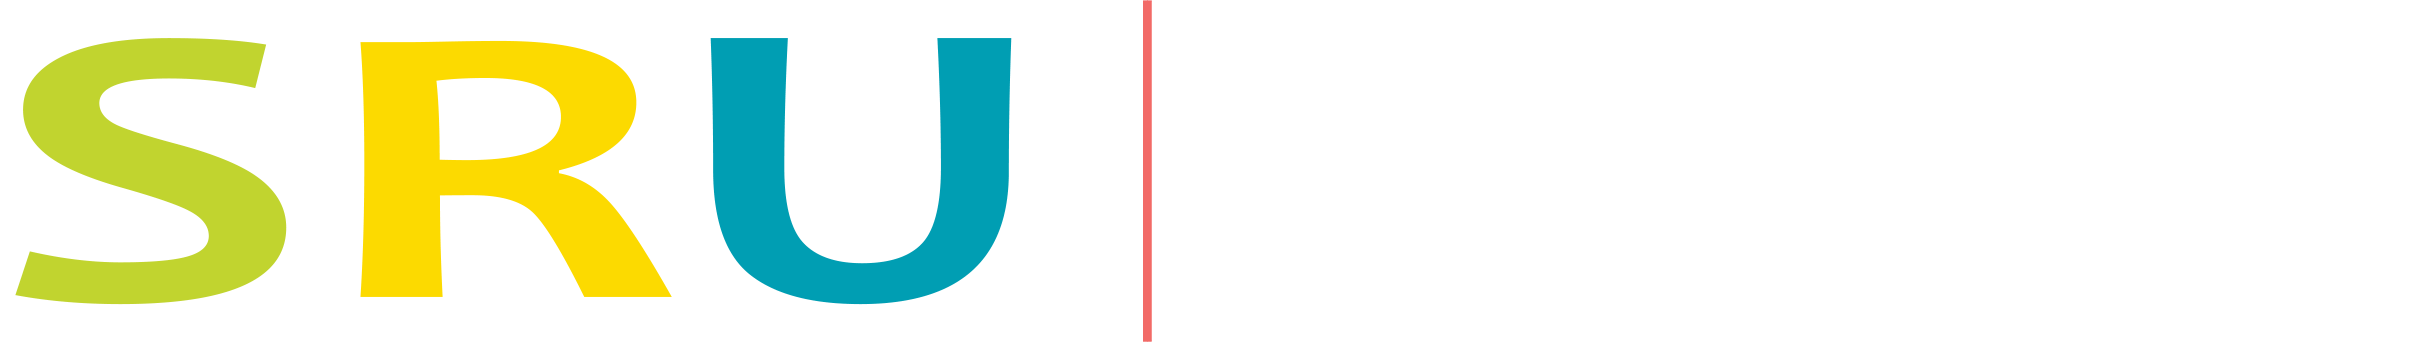 SR University Logo